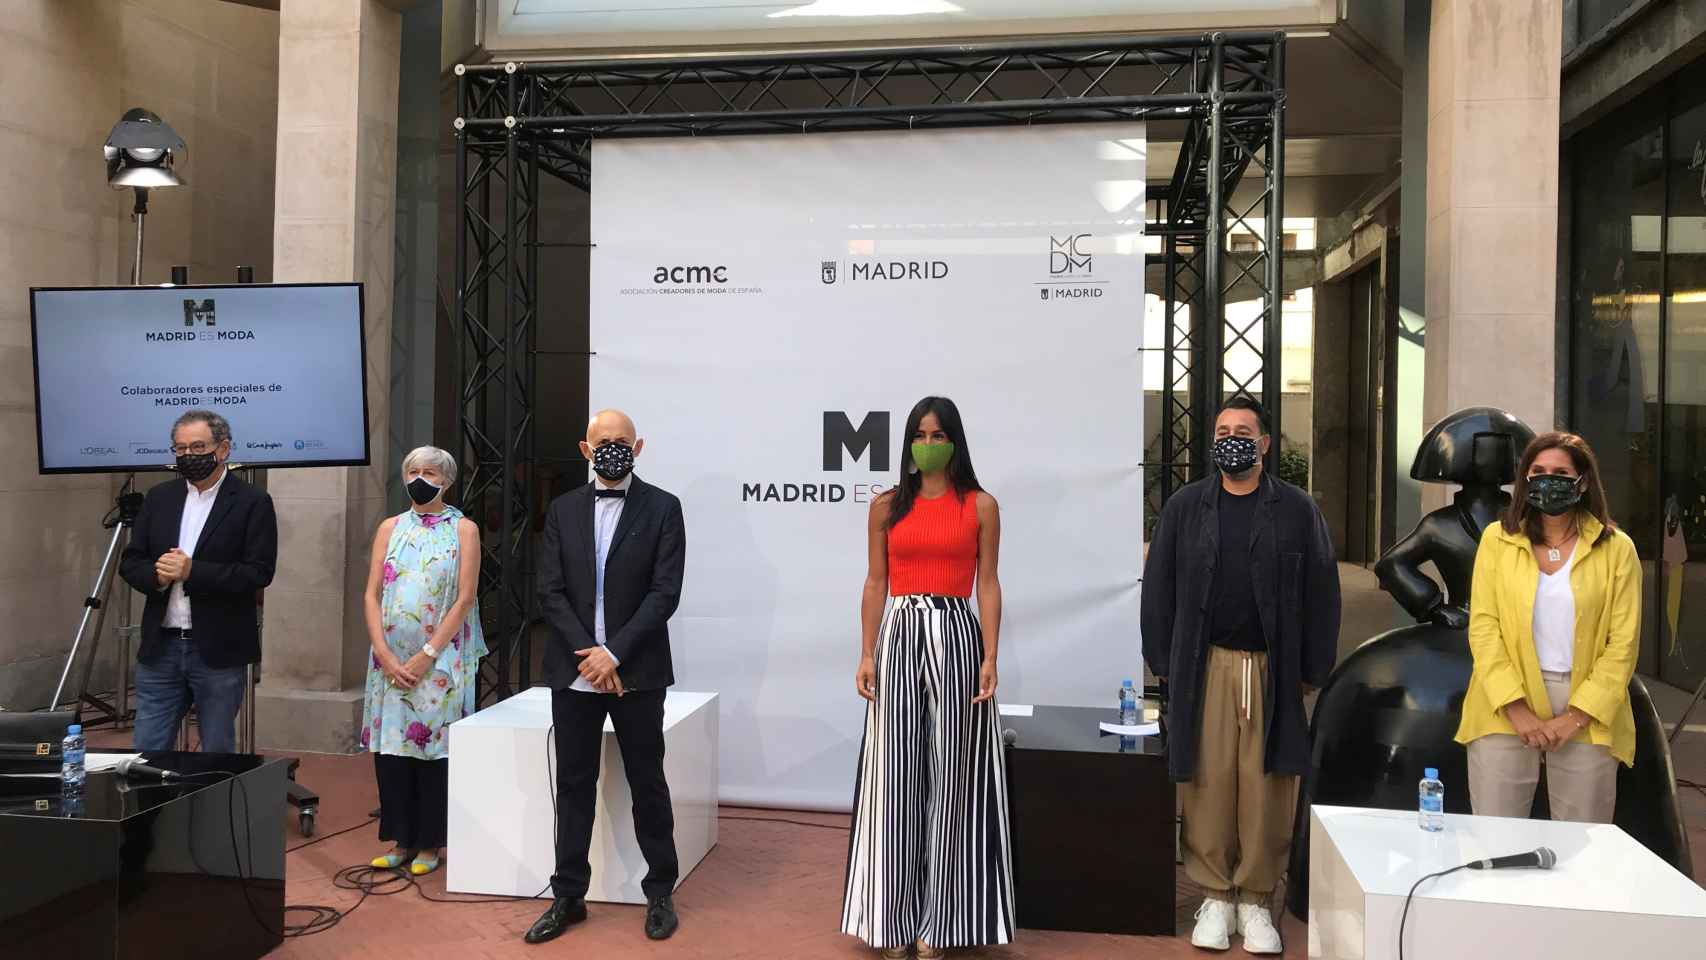 La vicealcaldesa de Madrid, Begoña Villacís, junto al presidente de ACME, Modesto Lomba, entre otros, presenta una nueva edición de Madrid es Moda junto a la Asociación Creadores de Moda de España.